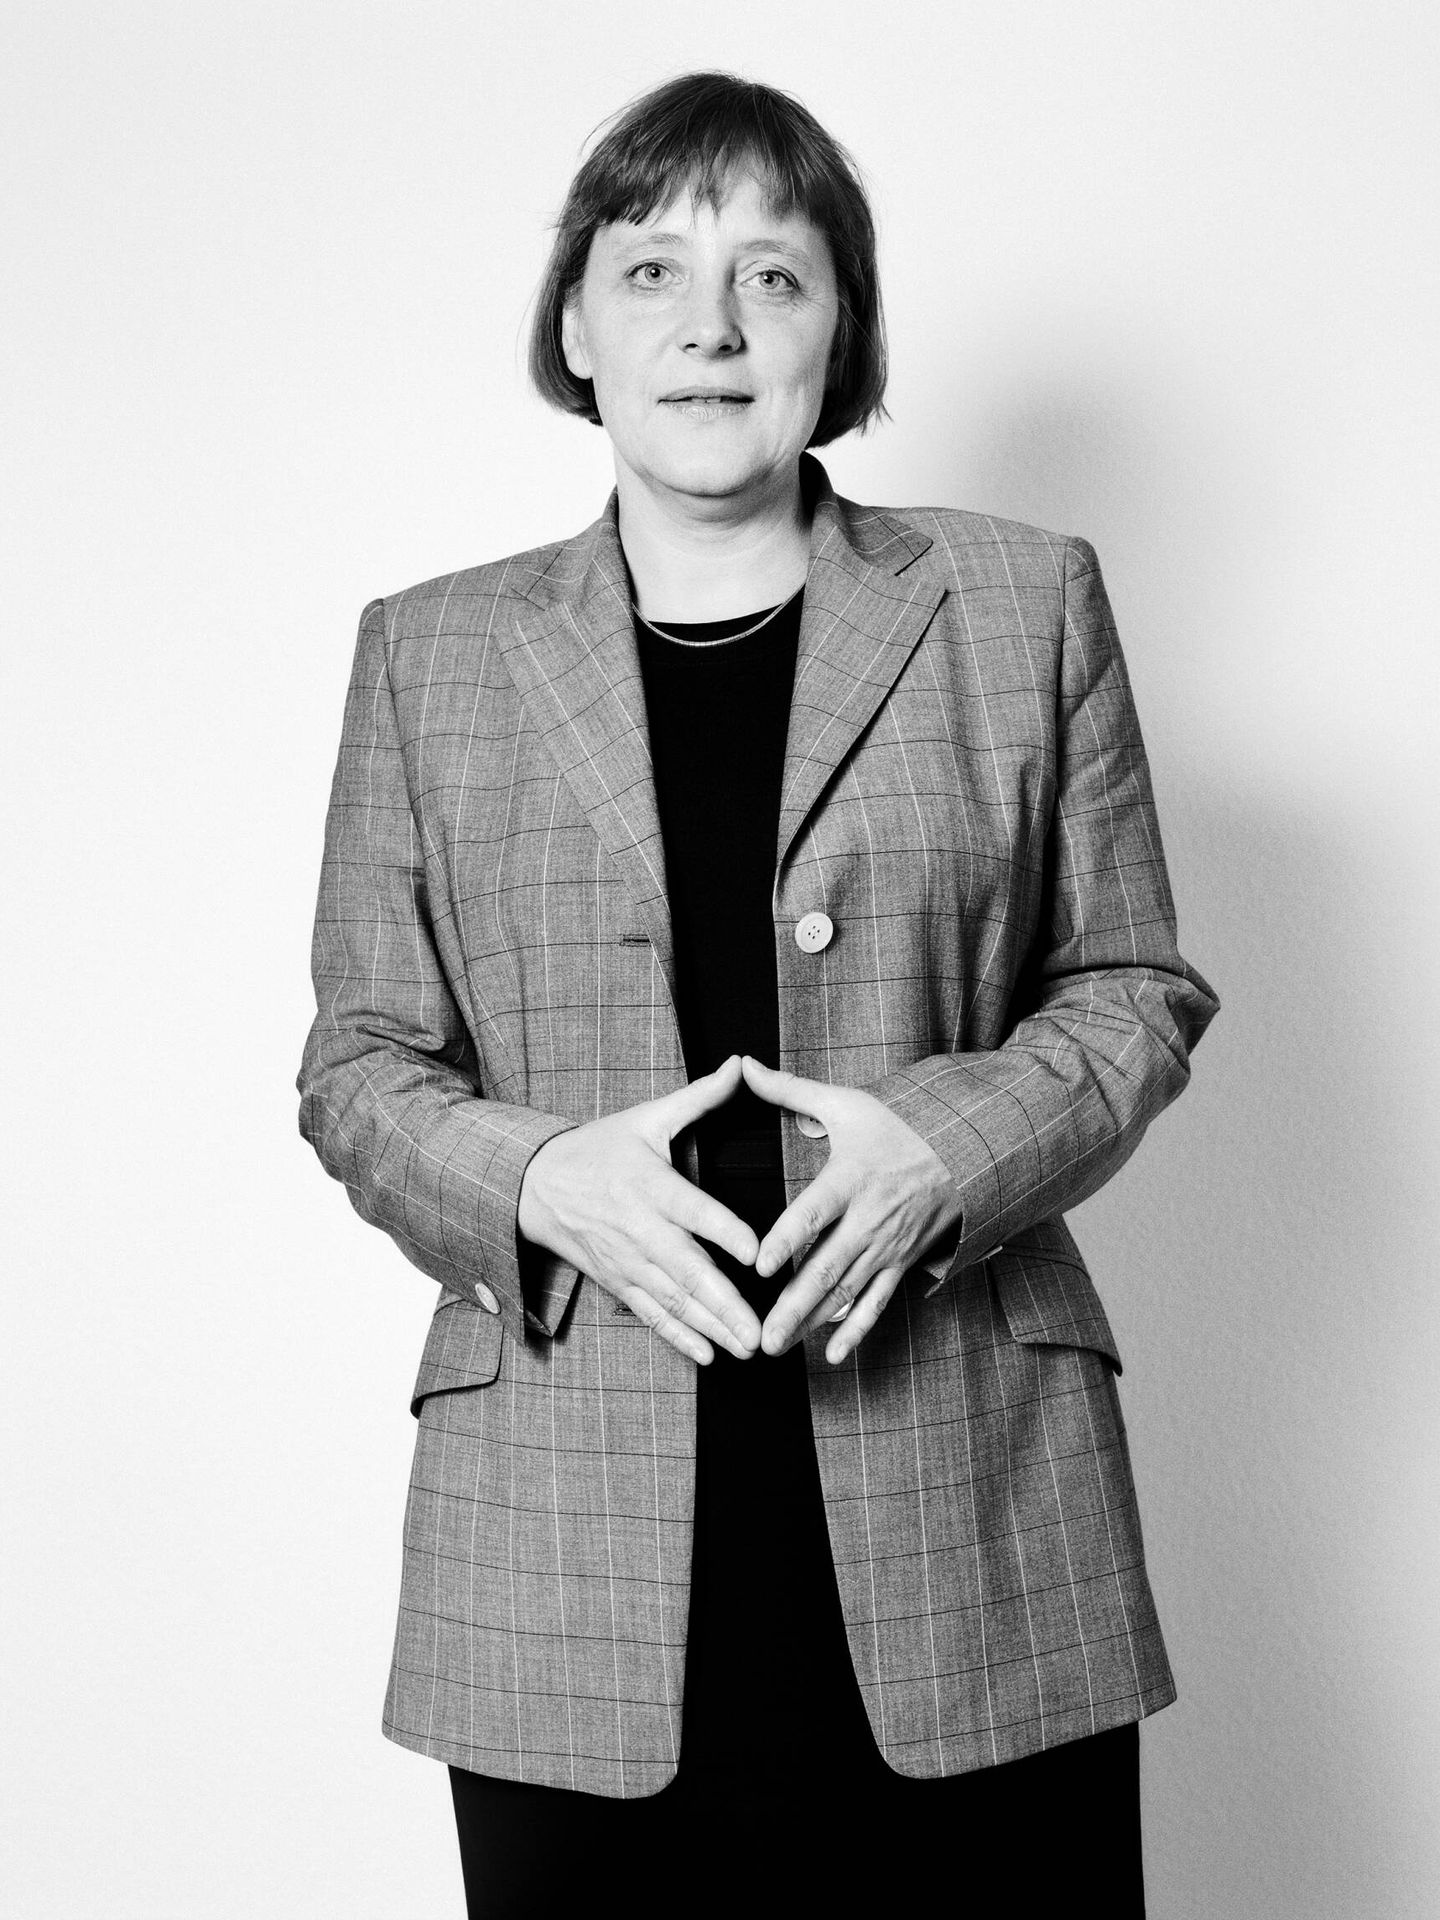 El 'diamante de Merkel' formado con sus manos, en 1998. (Koelbl/Taschen)